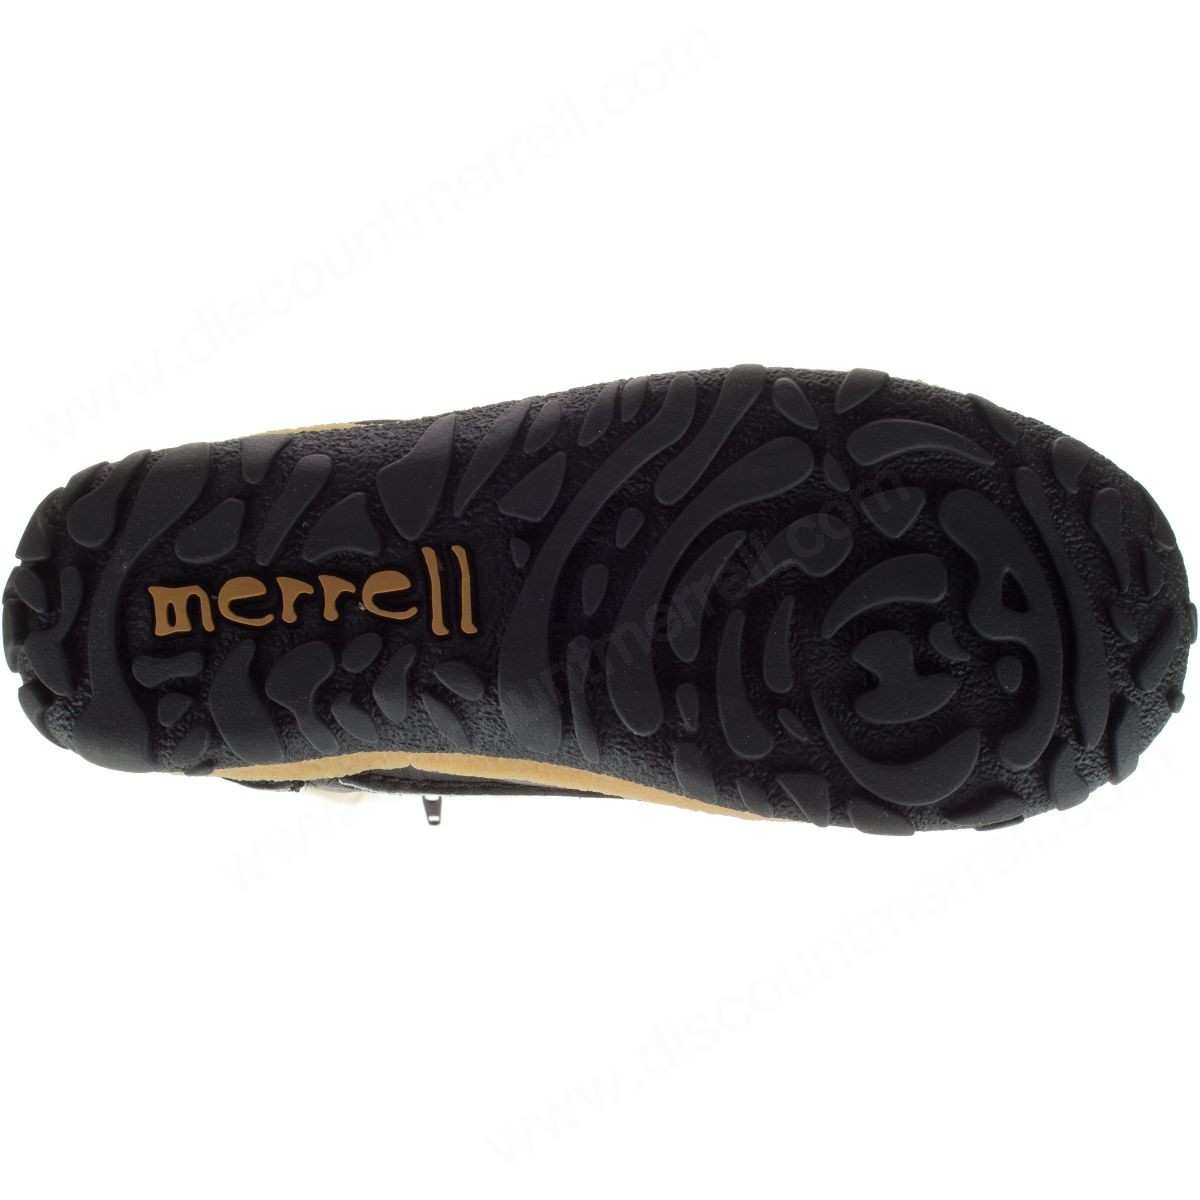 Merrell Woman's Tremblant Tall Polar Waterproof Black - -1